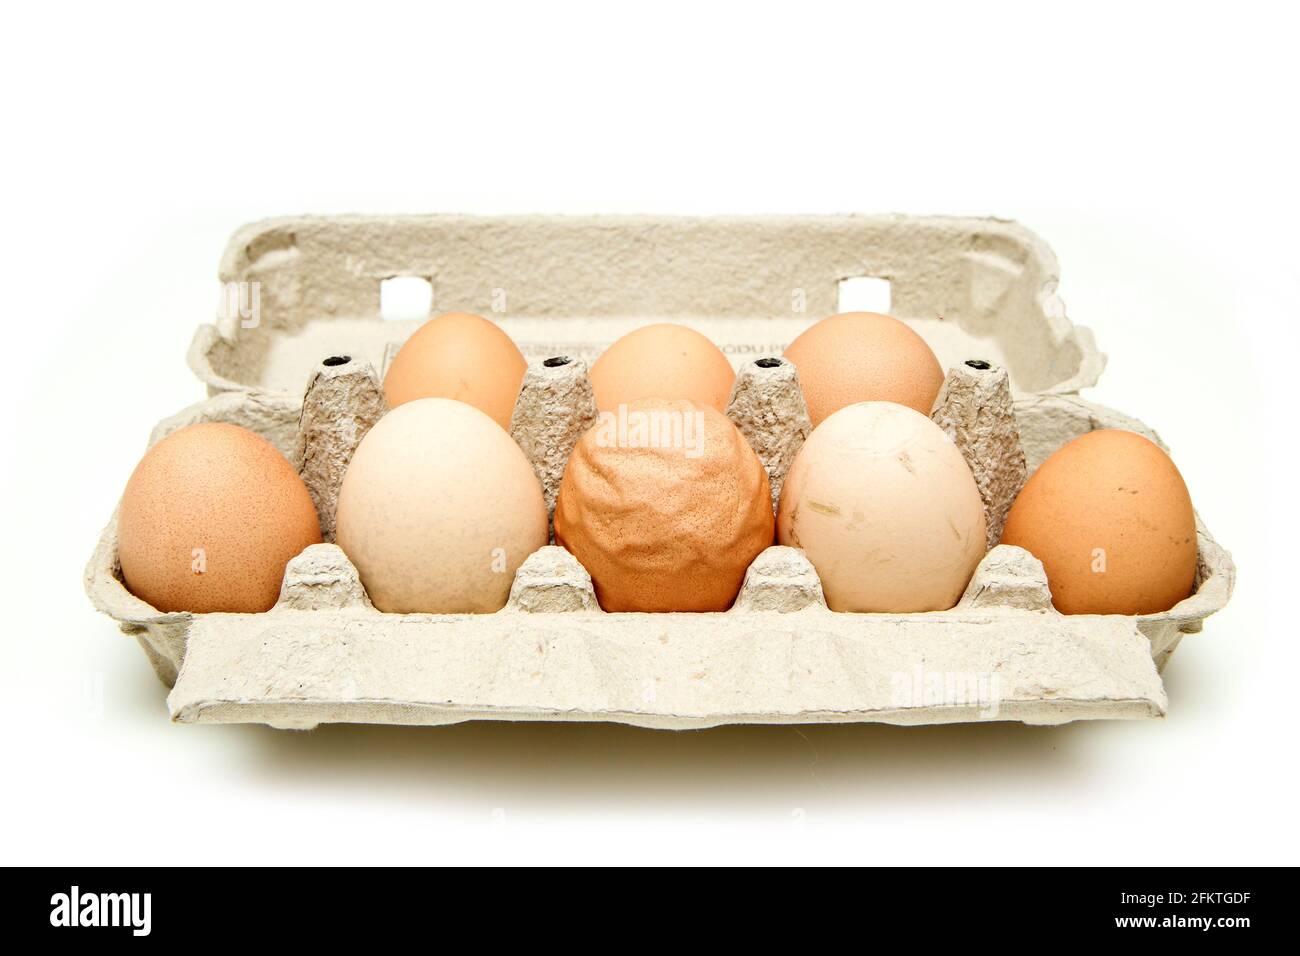 L'uovo biologico con gusci d'uovo ruvidi e ondulati tra le altre uova buone. Isolato su sfondo bianco. Foto Stock